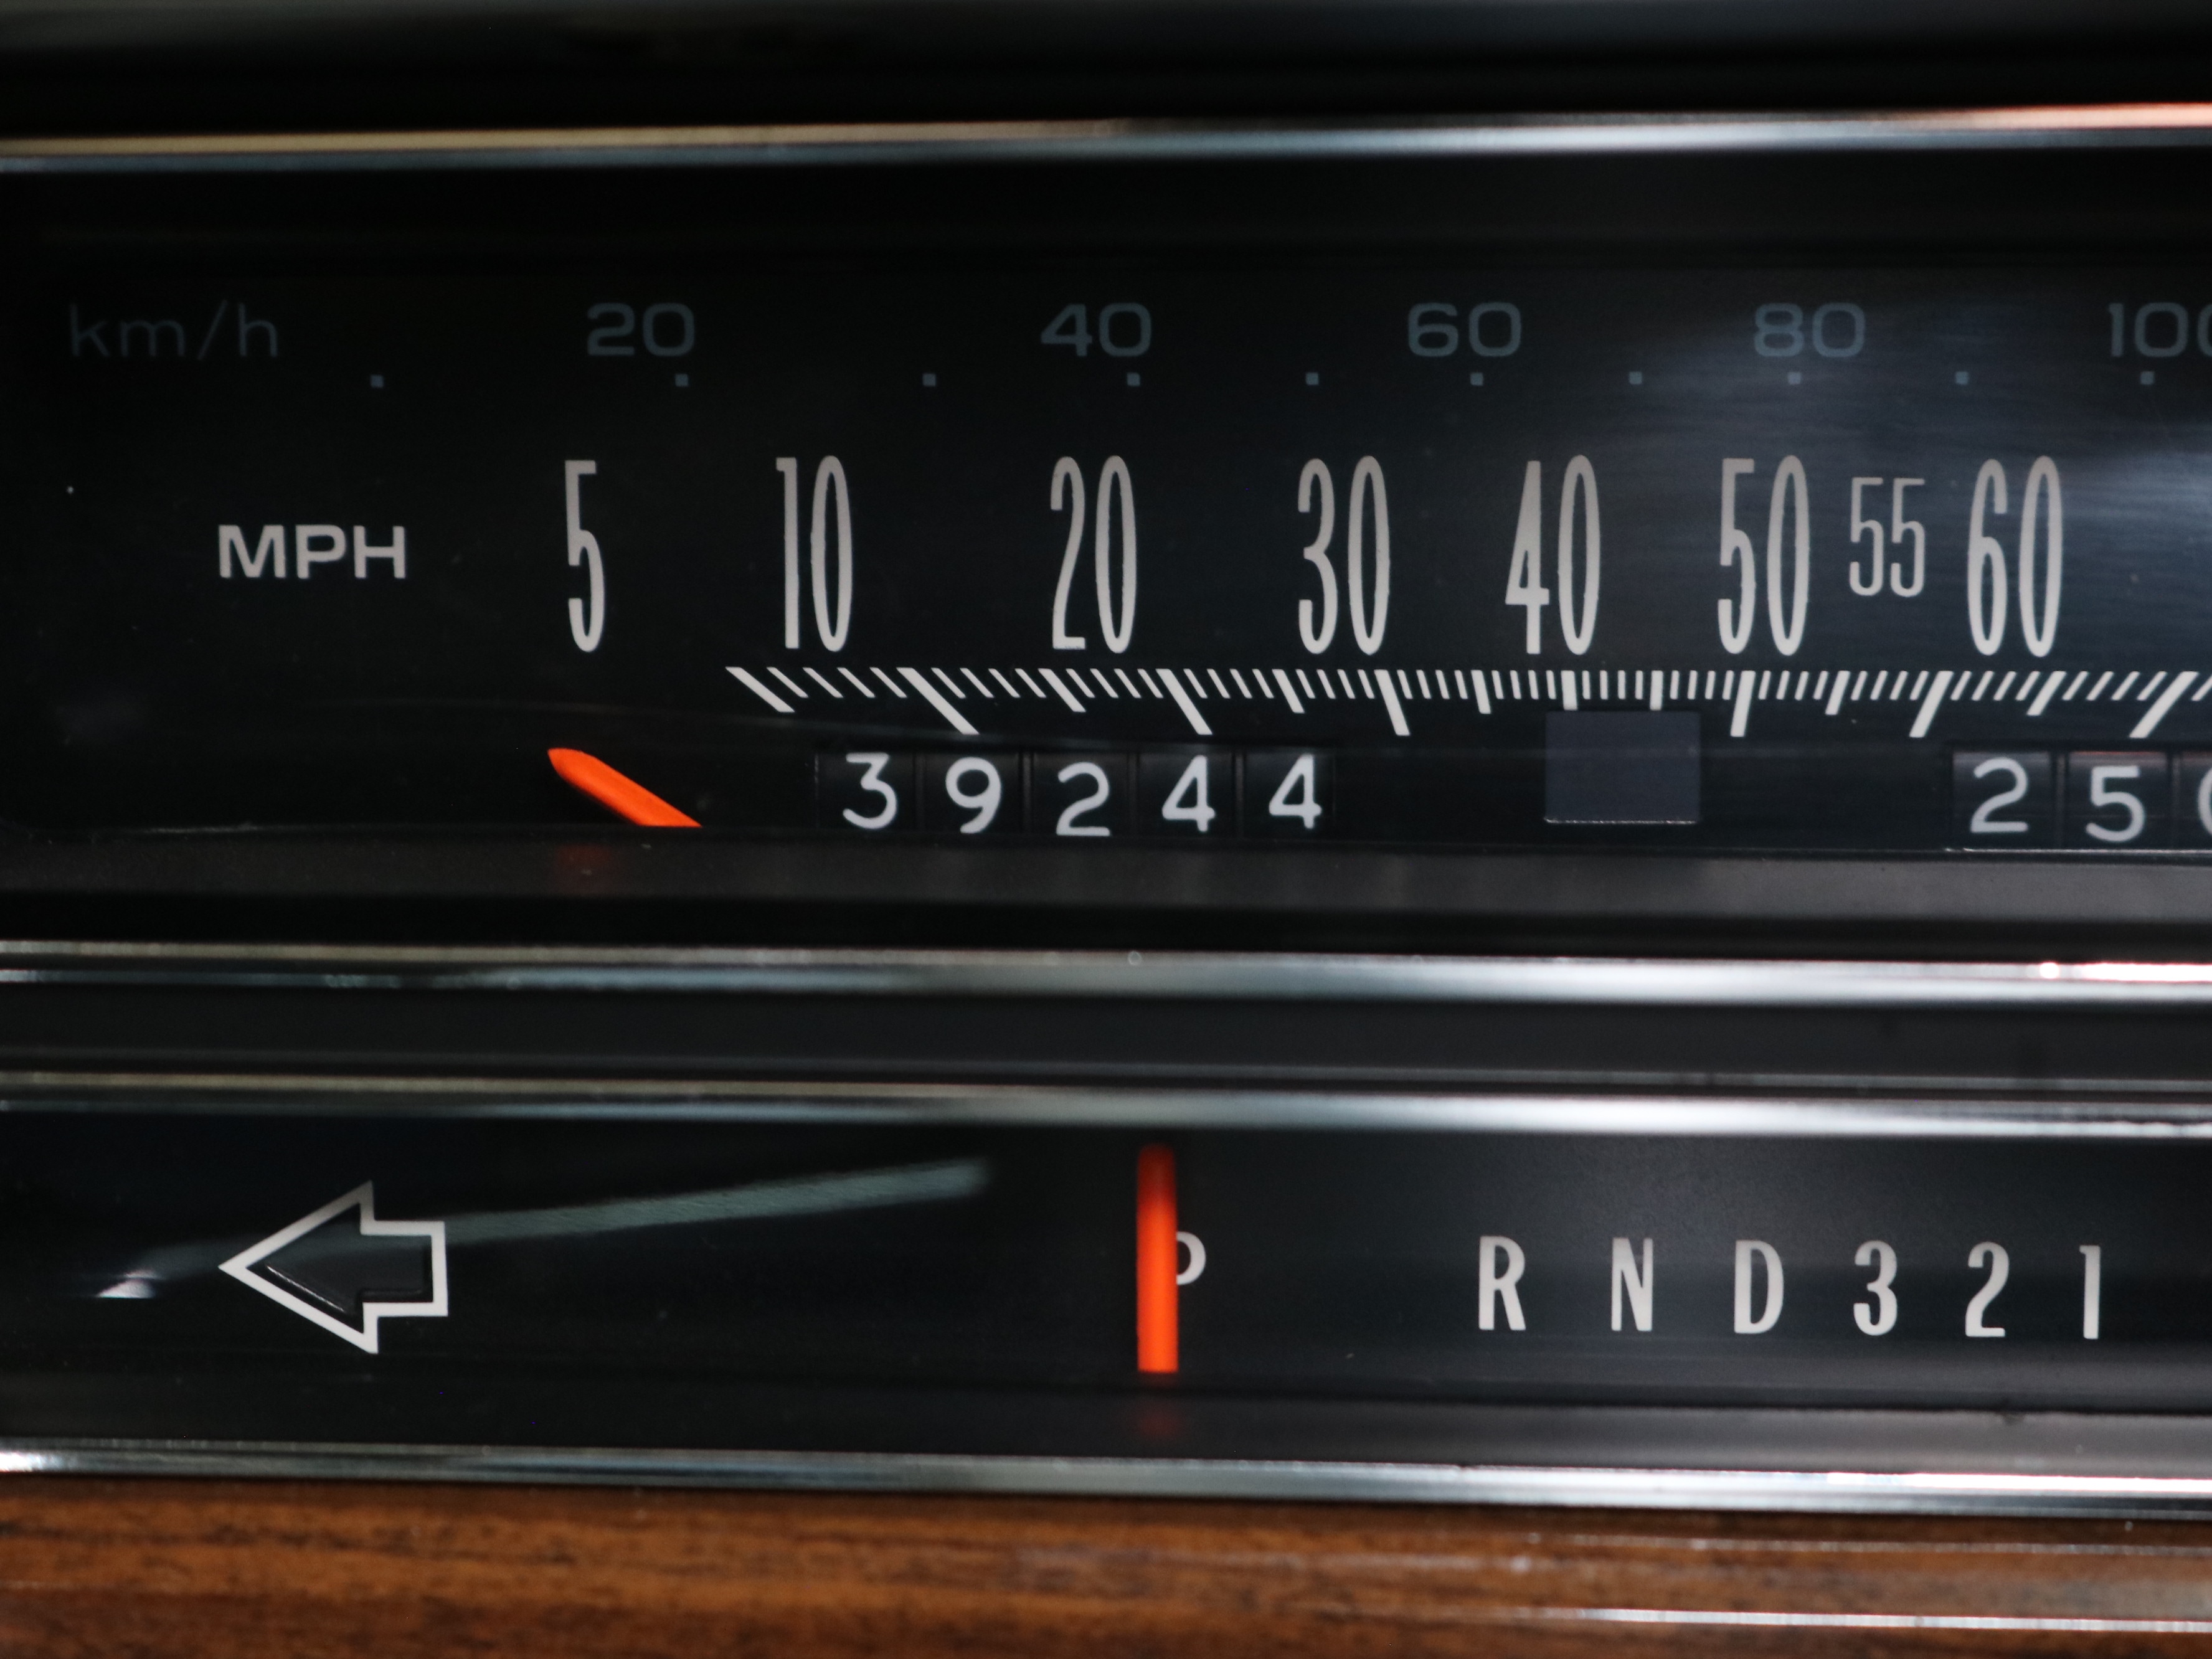 1989 Cadillac Broughham 43